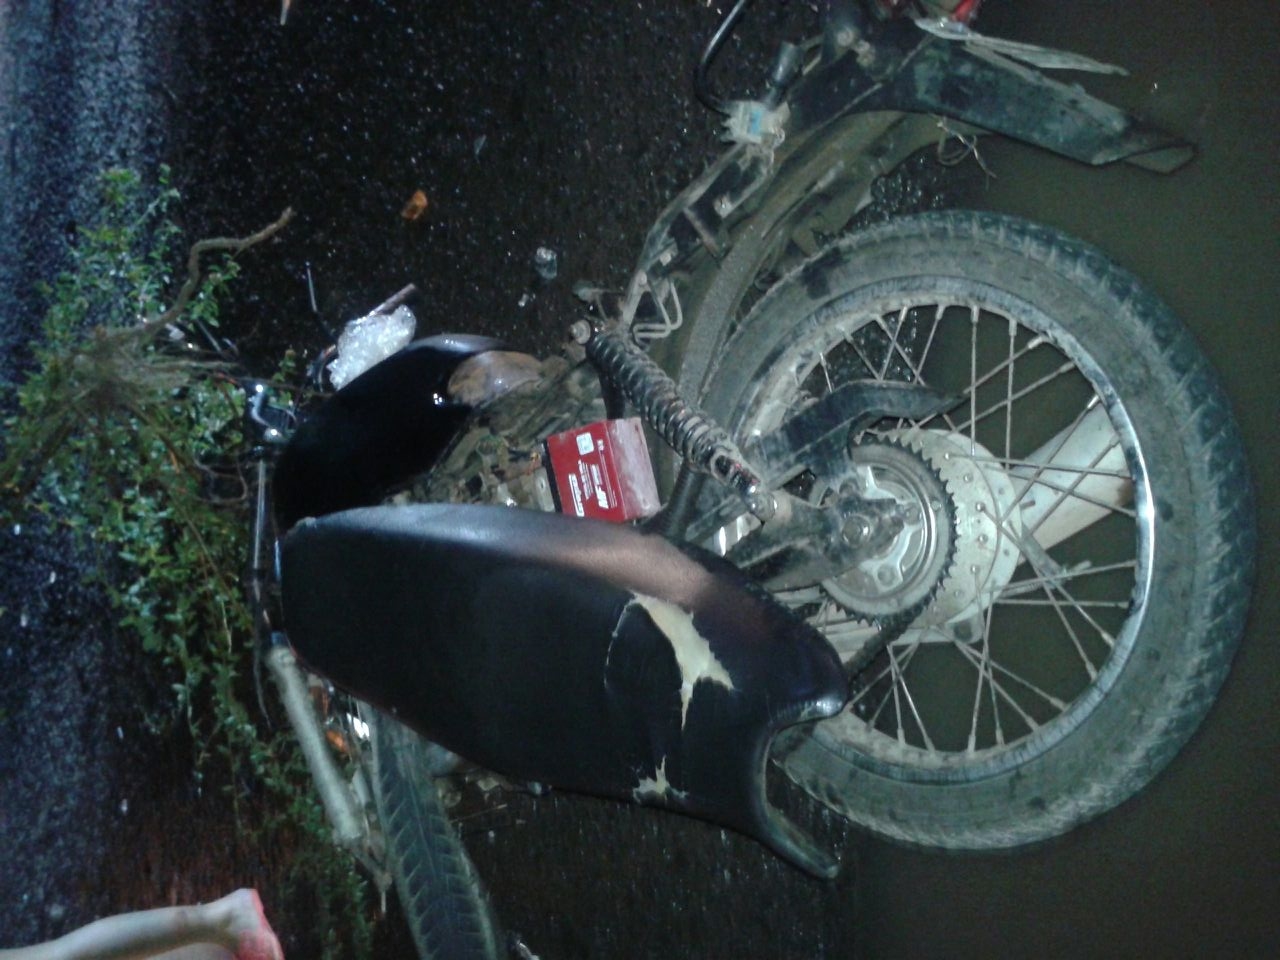 Motociclista morre após colisão com outro veículo na PI 130